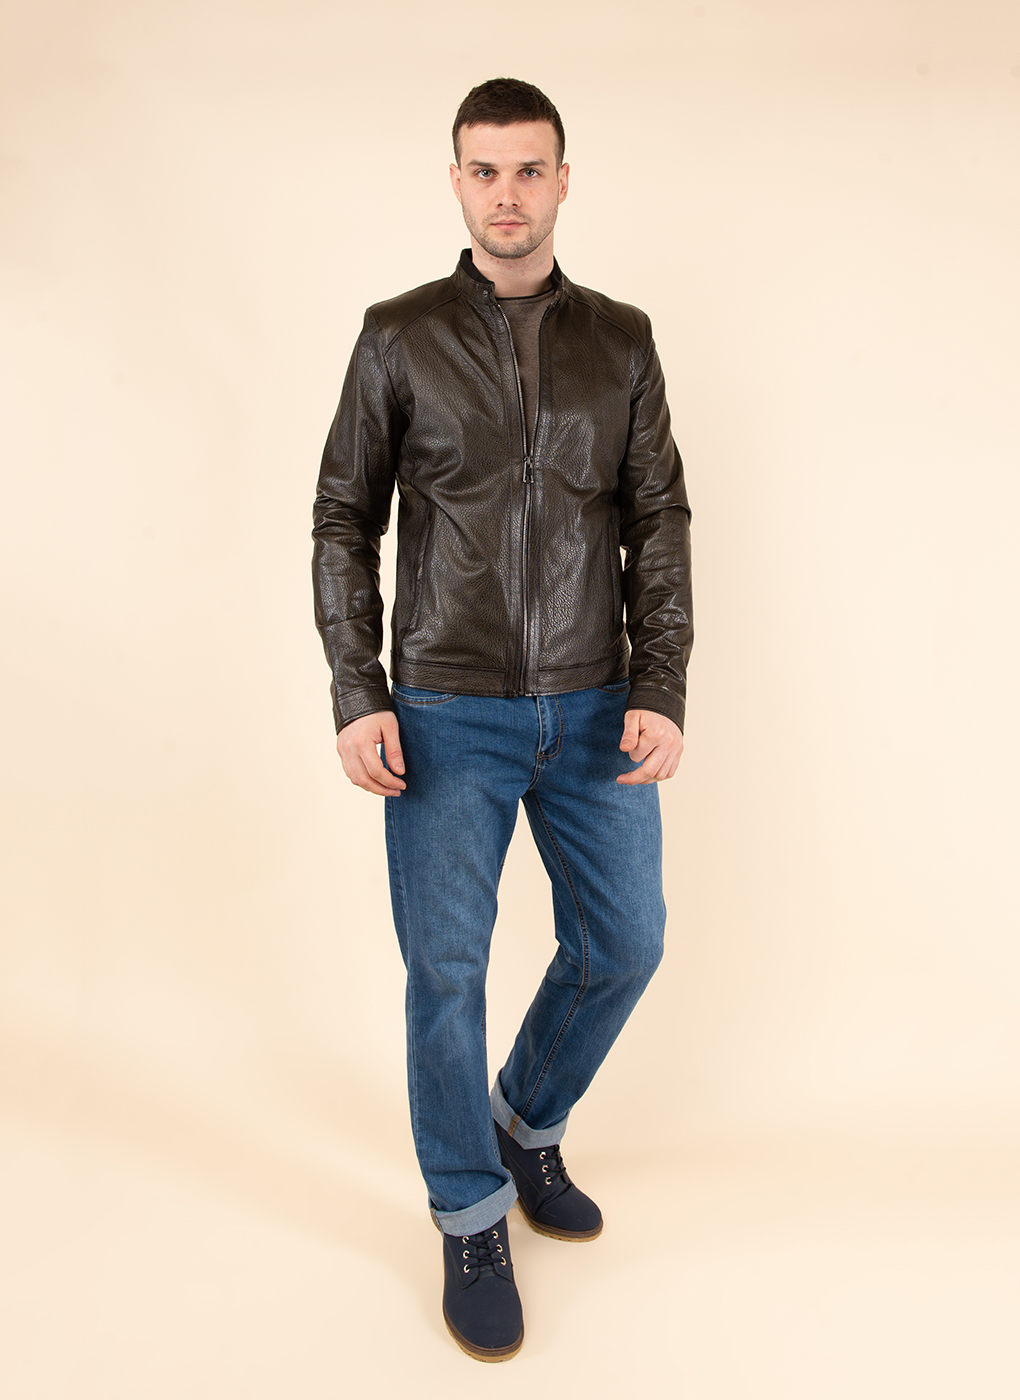 Кожаная куртка мужская Каляев 1584417 коричневая 58 RU